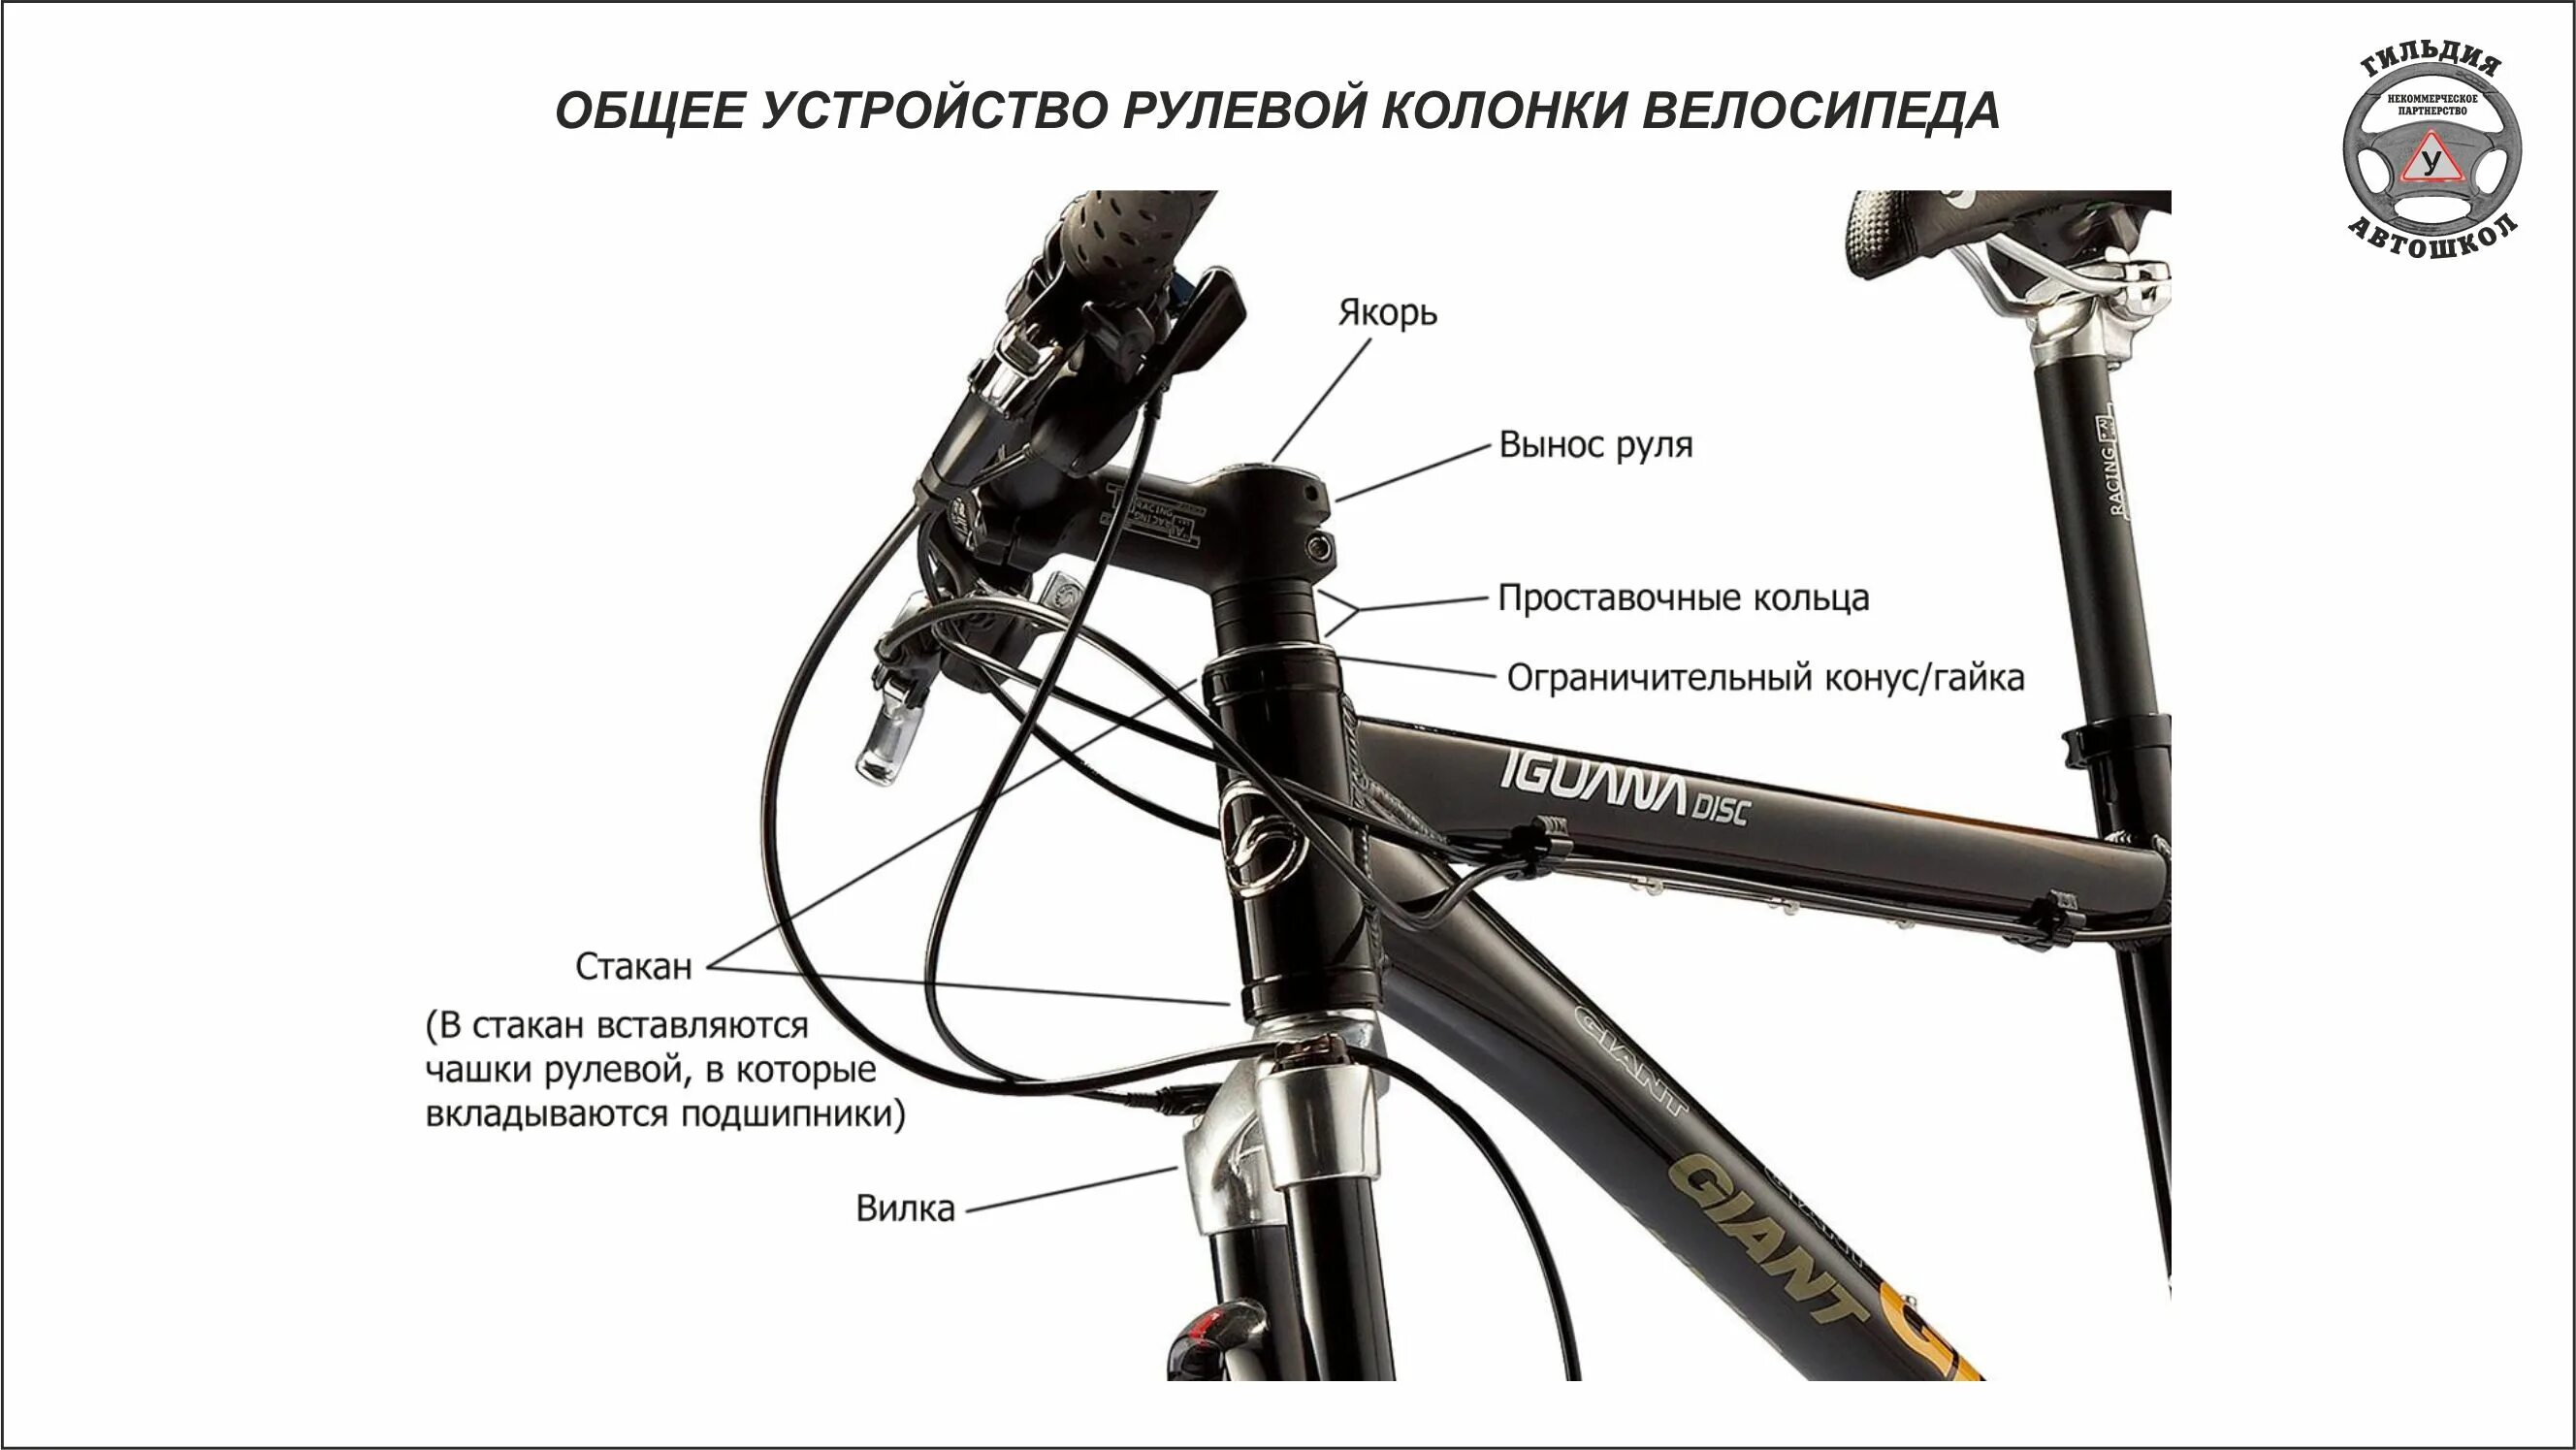 Руль велосипеда какой должен быть. Конструкция рулевой колонки велосипеда стелс 950md. Рулевая колонка велосипеда стелс. Рулевая колонка велосипеда стелс навигатор. Сборка руля велосипеда стелс.